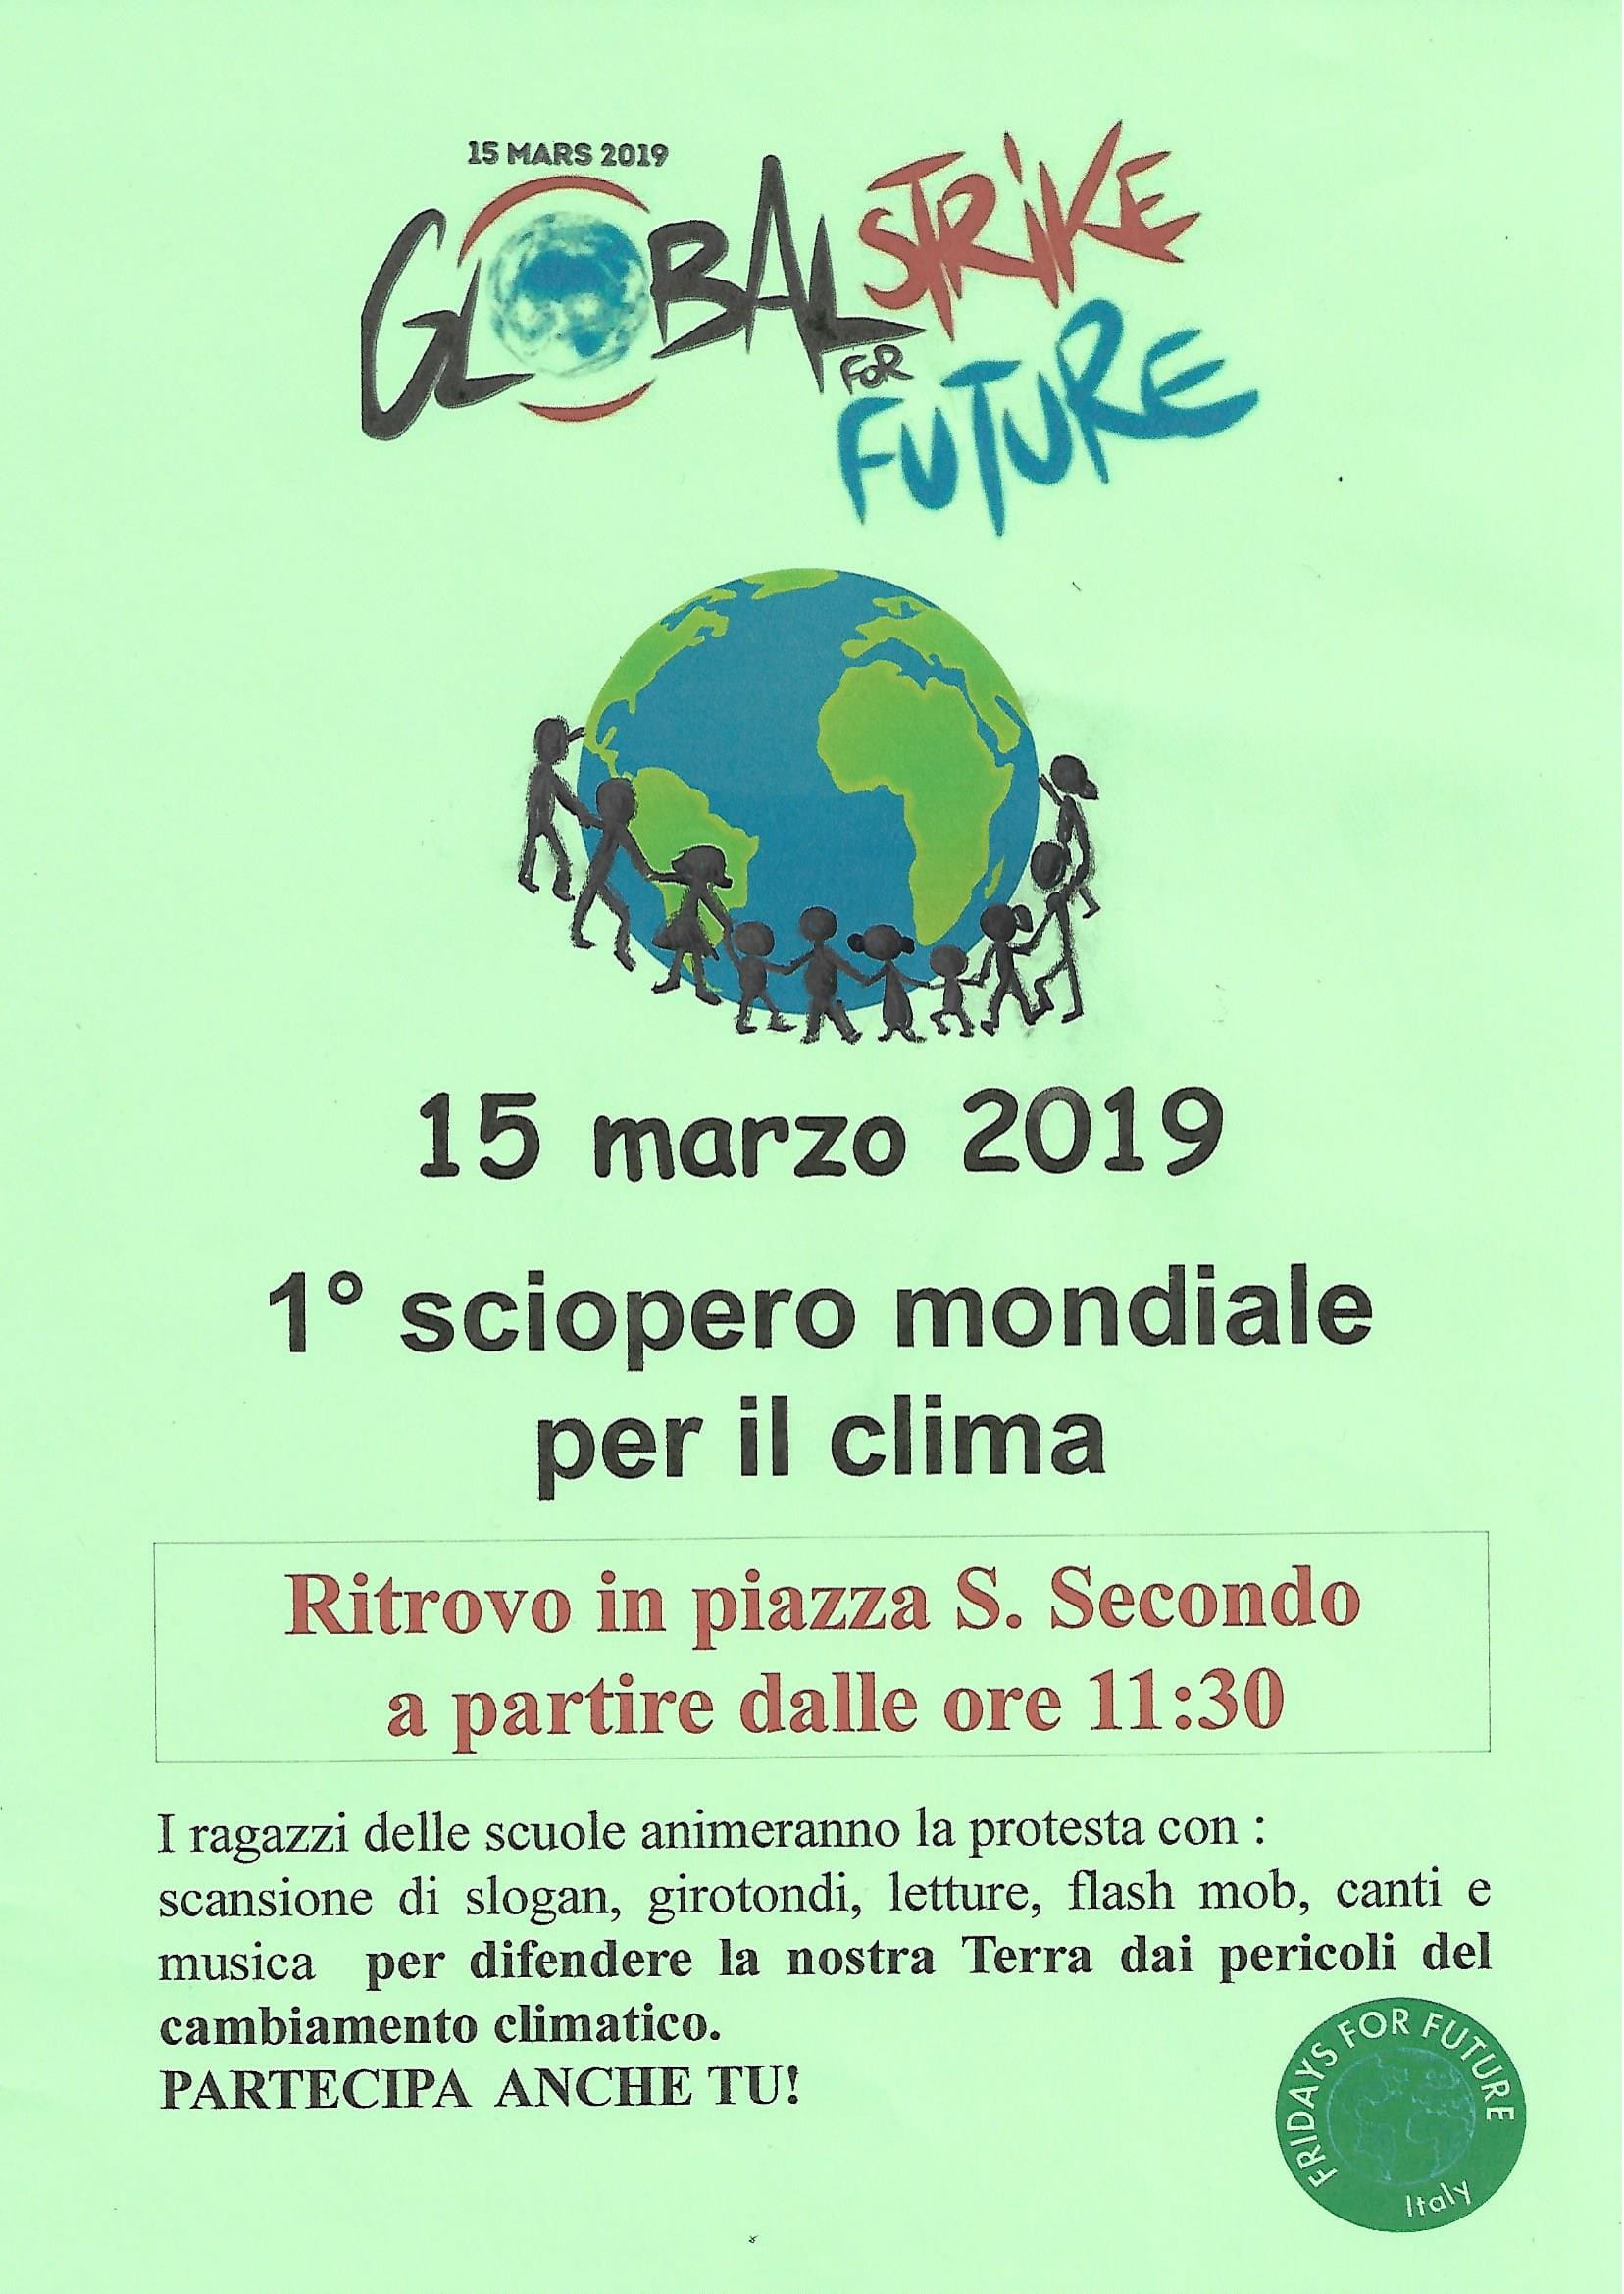 Volantino informativo del Global strike for future ad Asti, venerdì 15 marzo 2019.